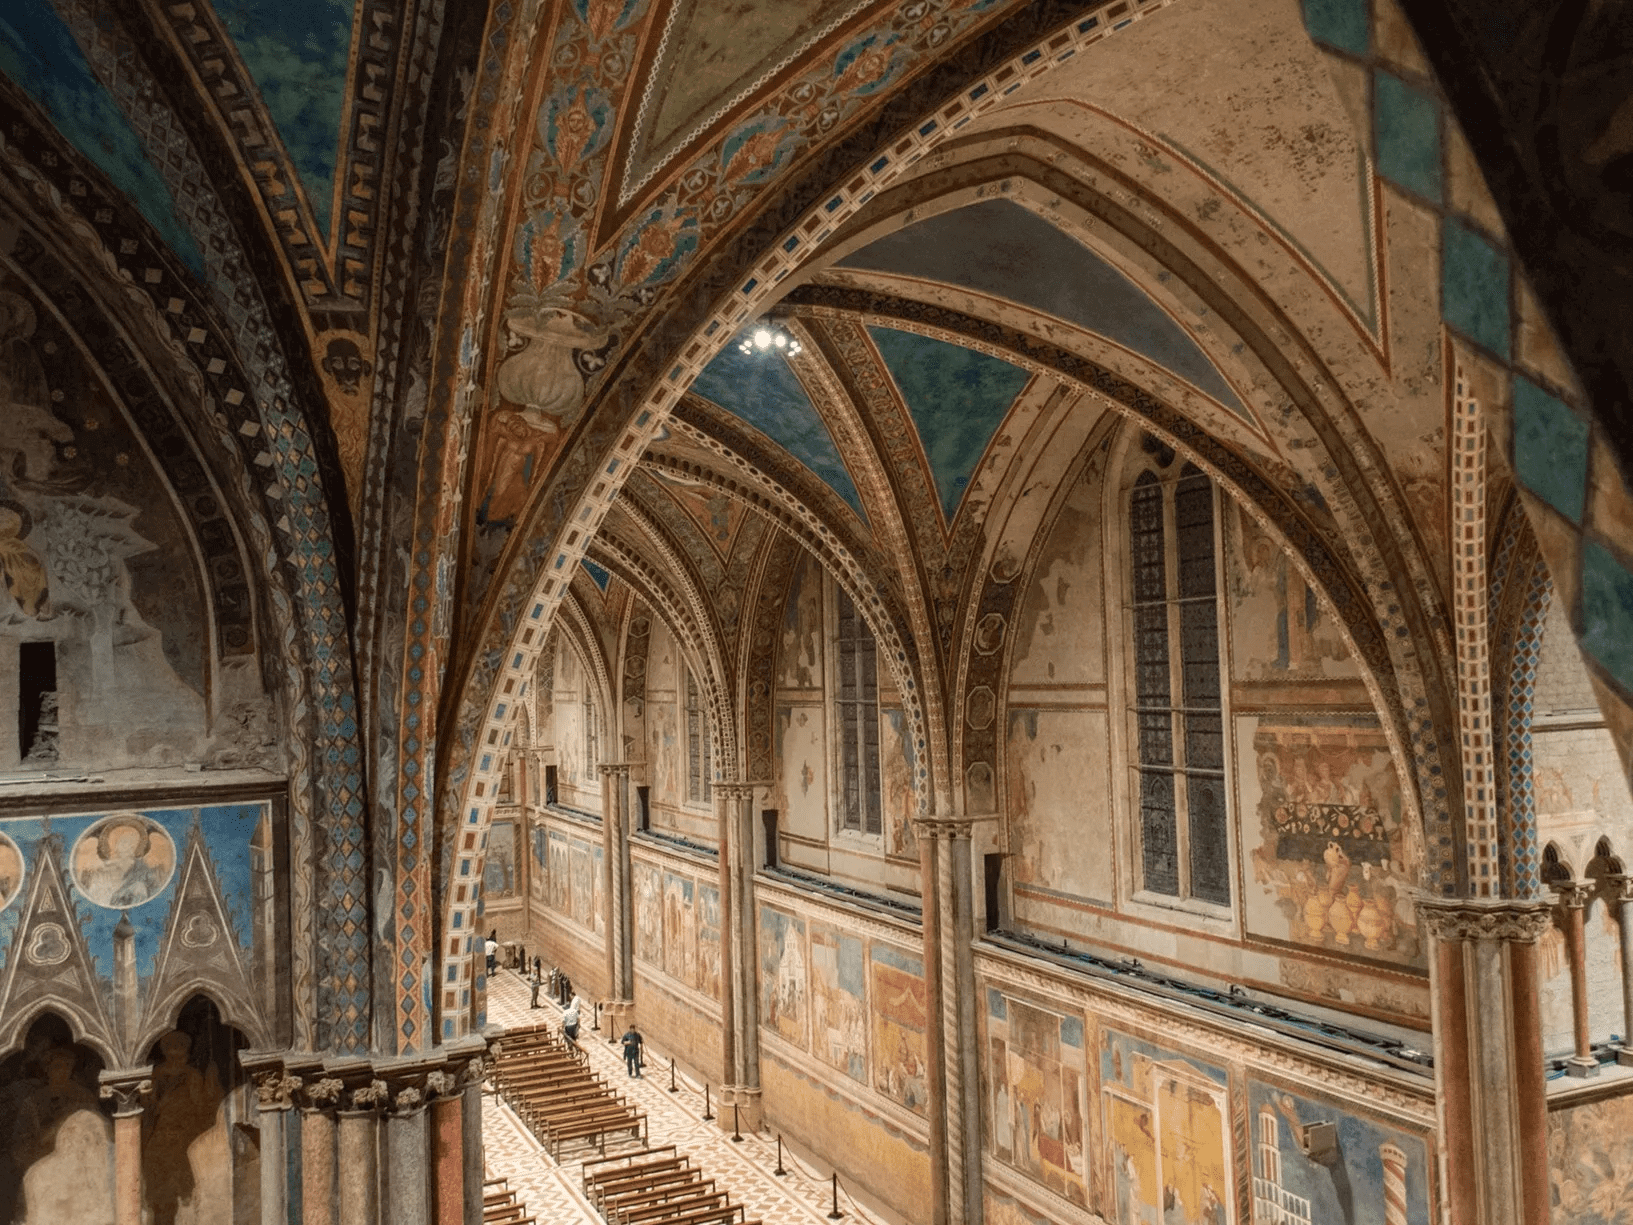 Interior da Basílica de São Francisco de Assis, em sua parte maior, ricamente decorada com afrescos nas paredes e tetos em arco, com detalhes em azul e dourado, e bancos de madeira dispostos no centro.